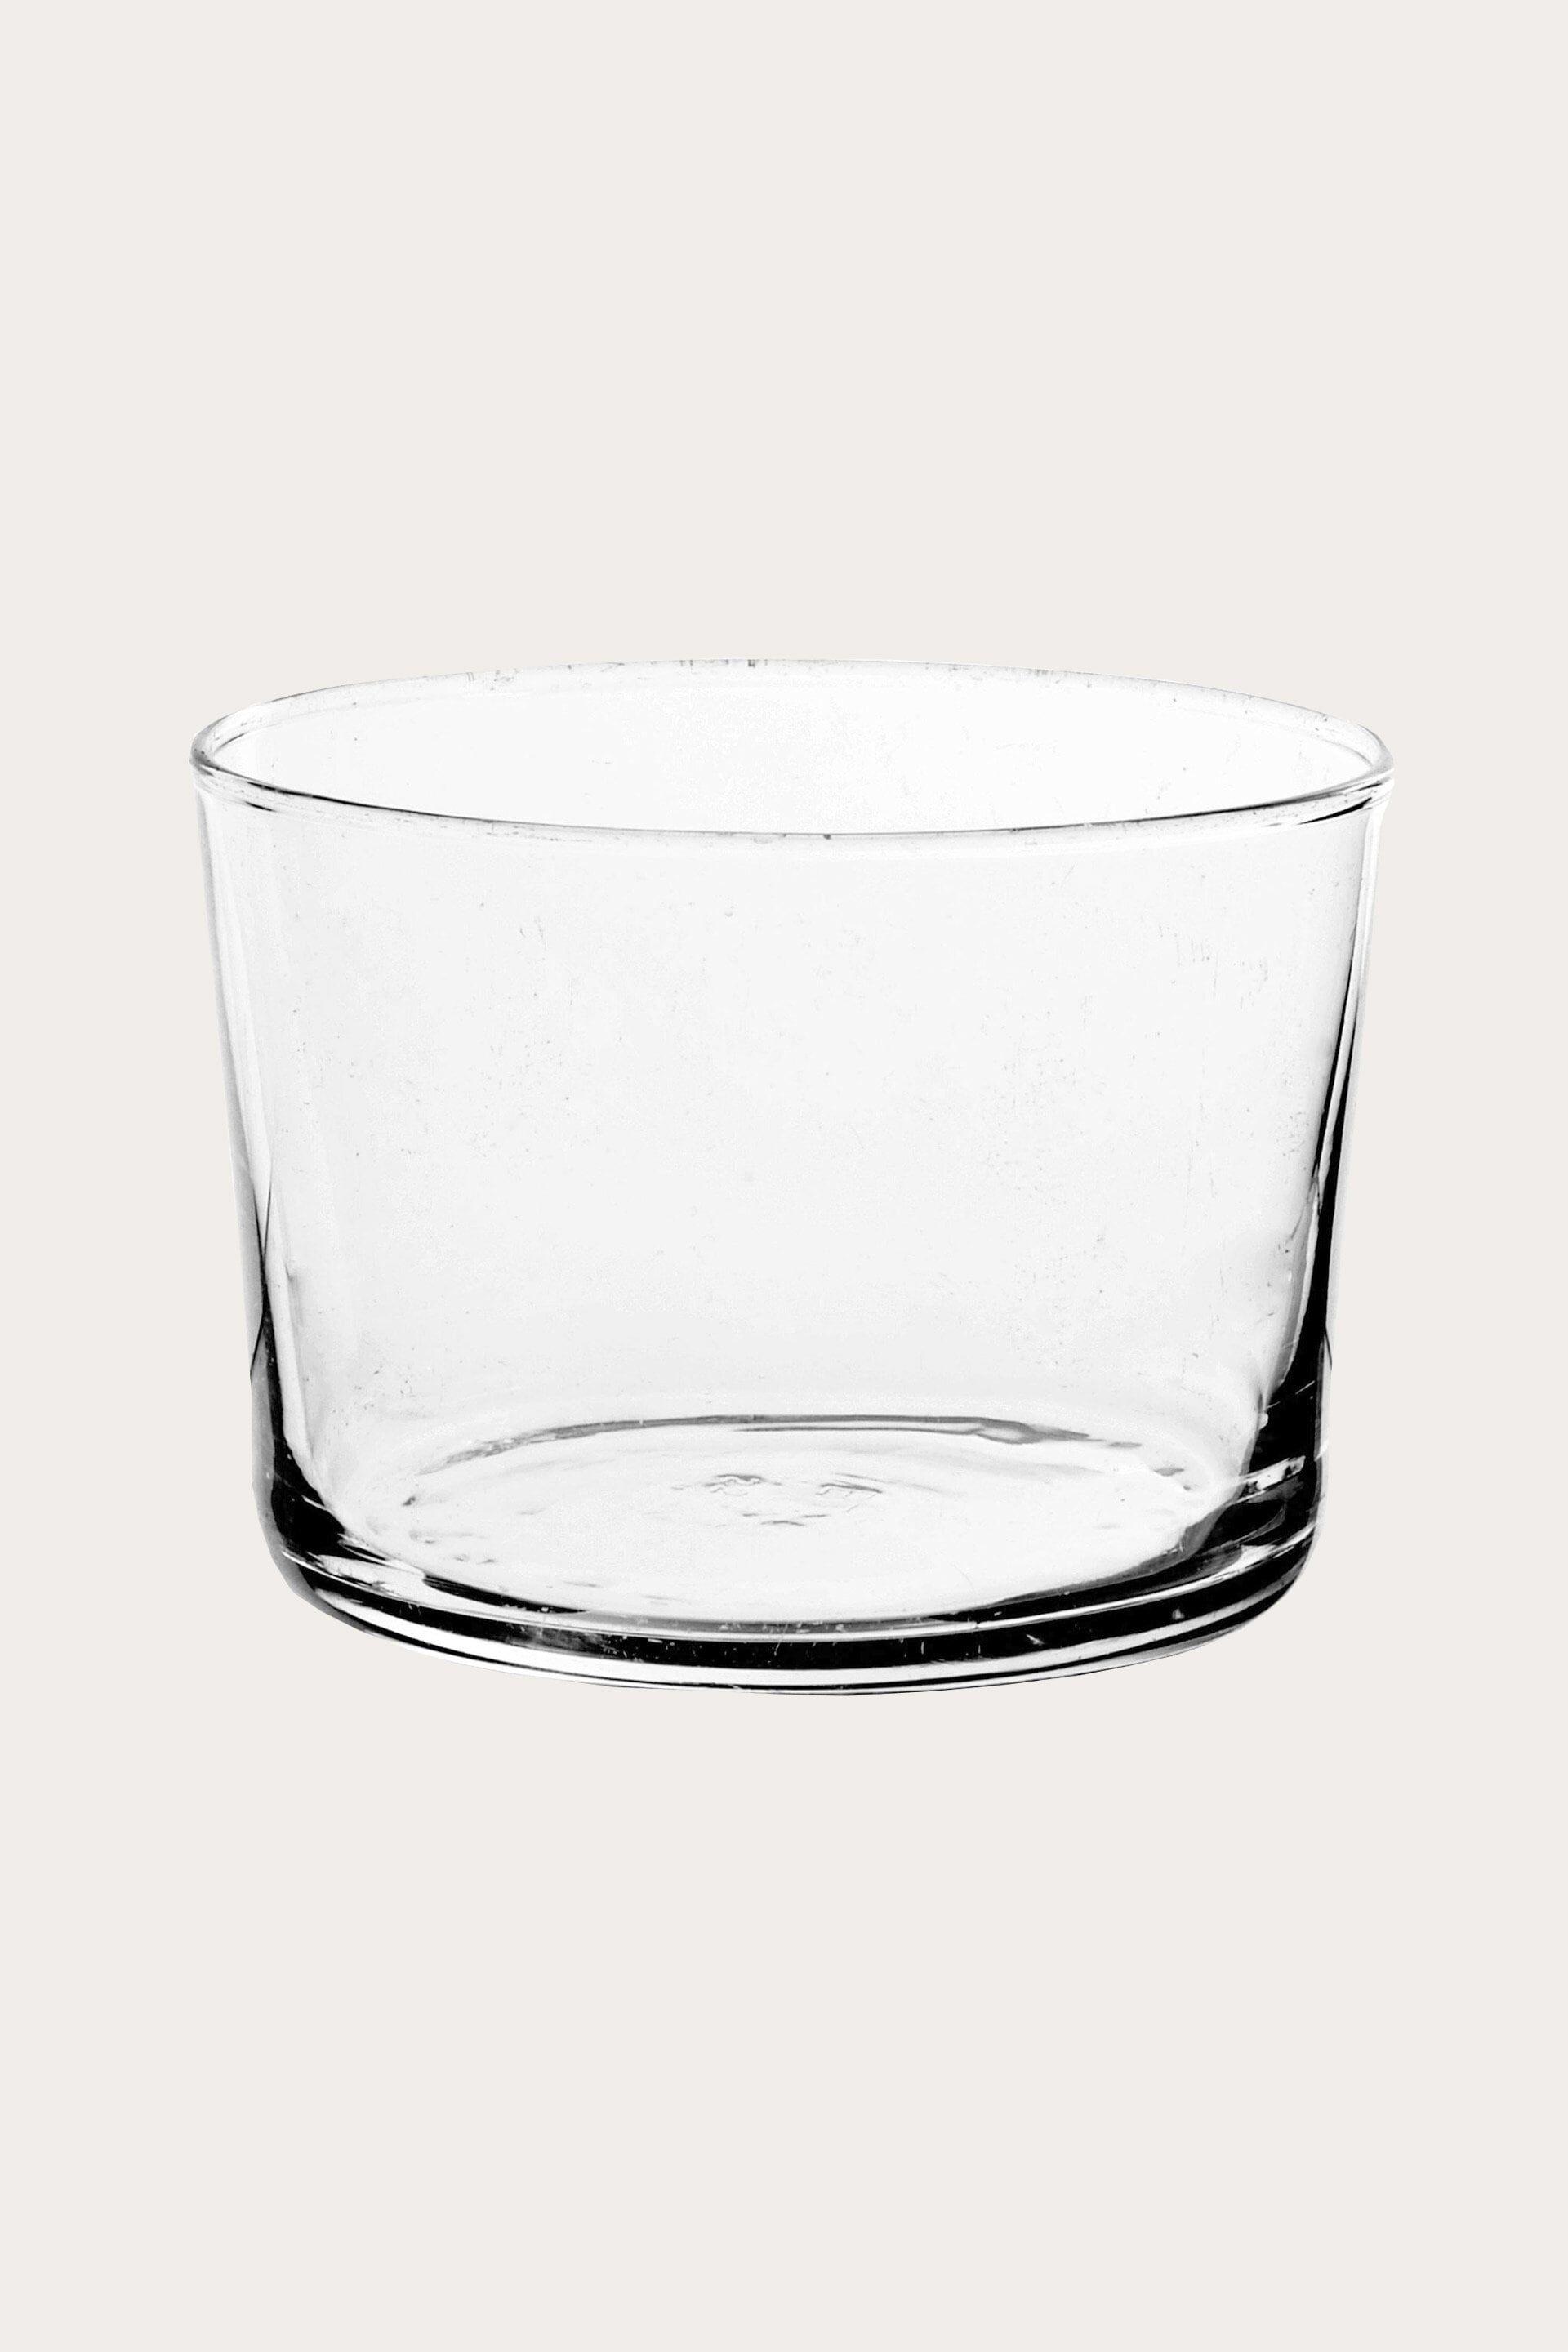 BODEGA multi-purpose glass, 22 cl